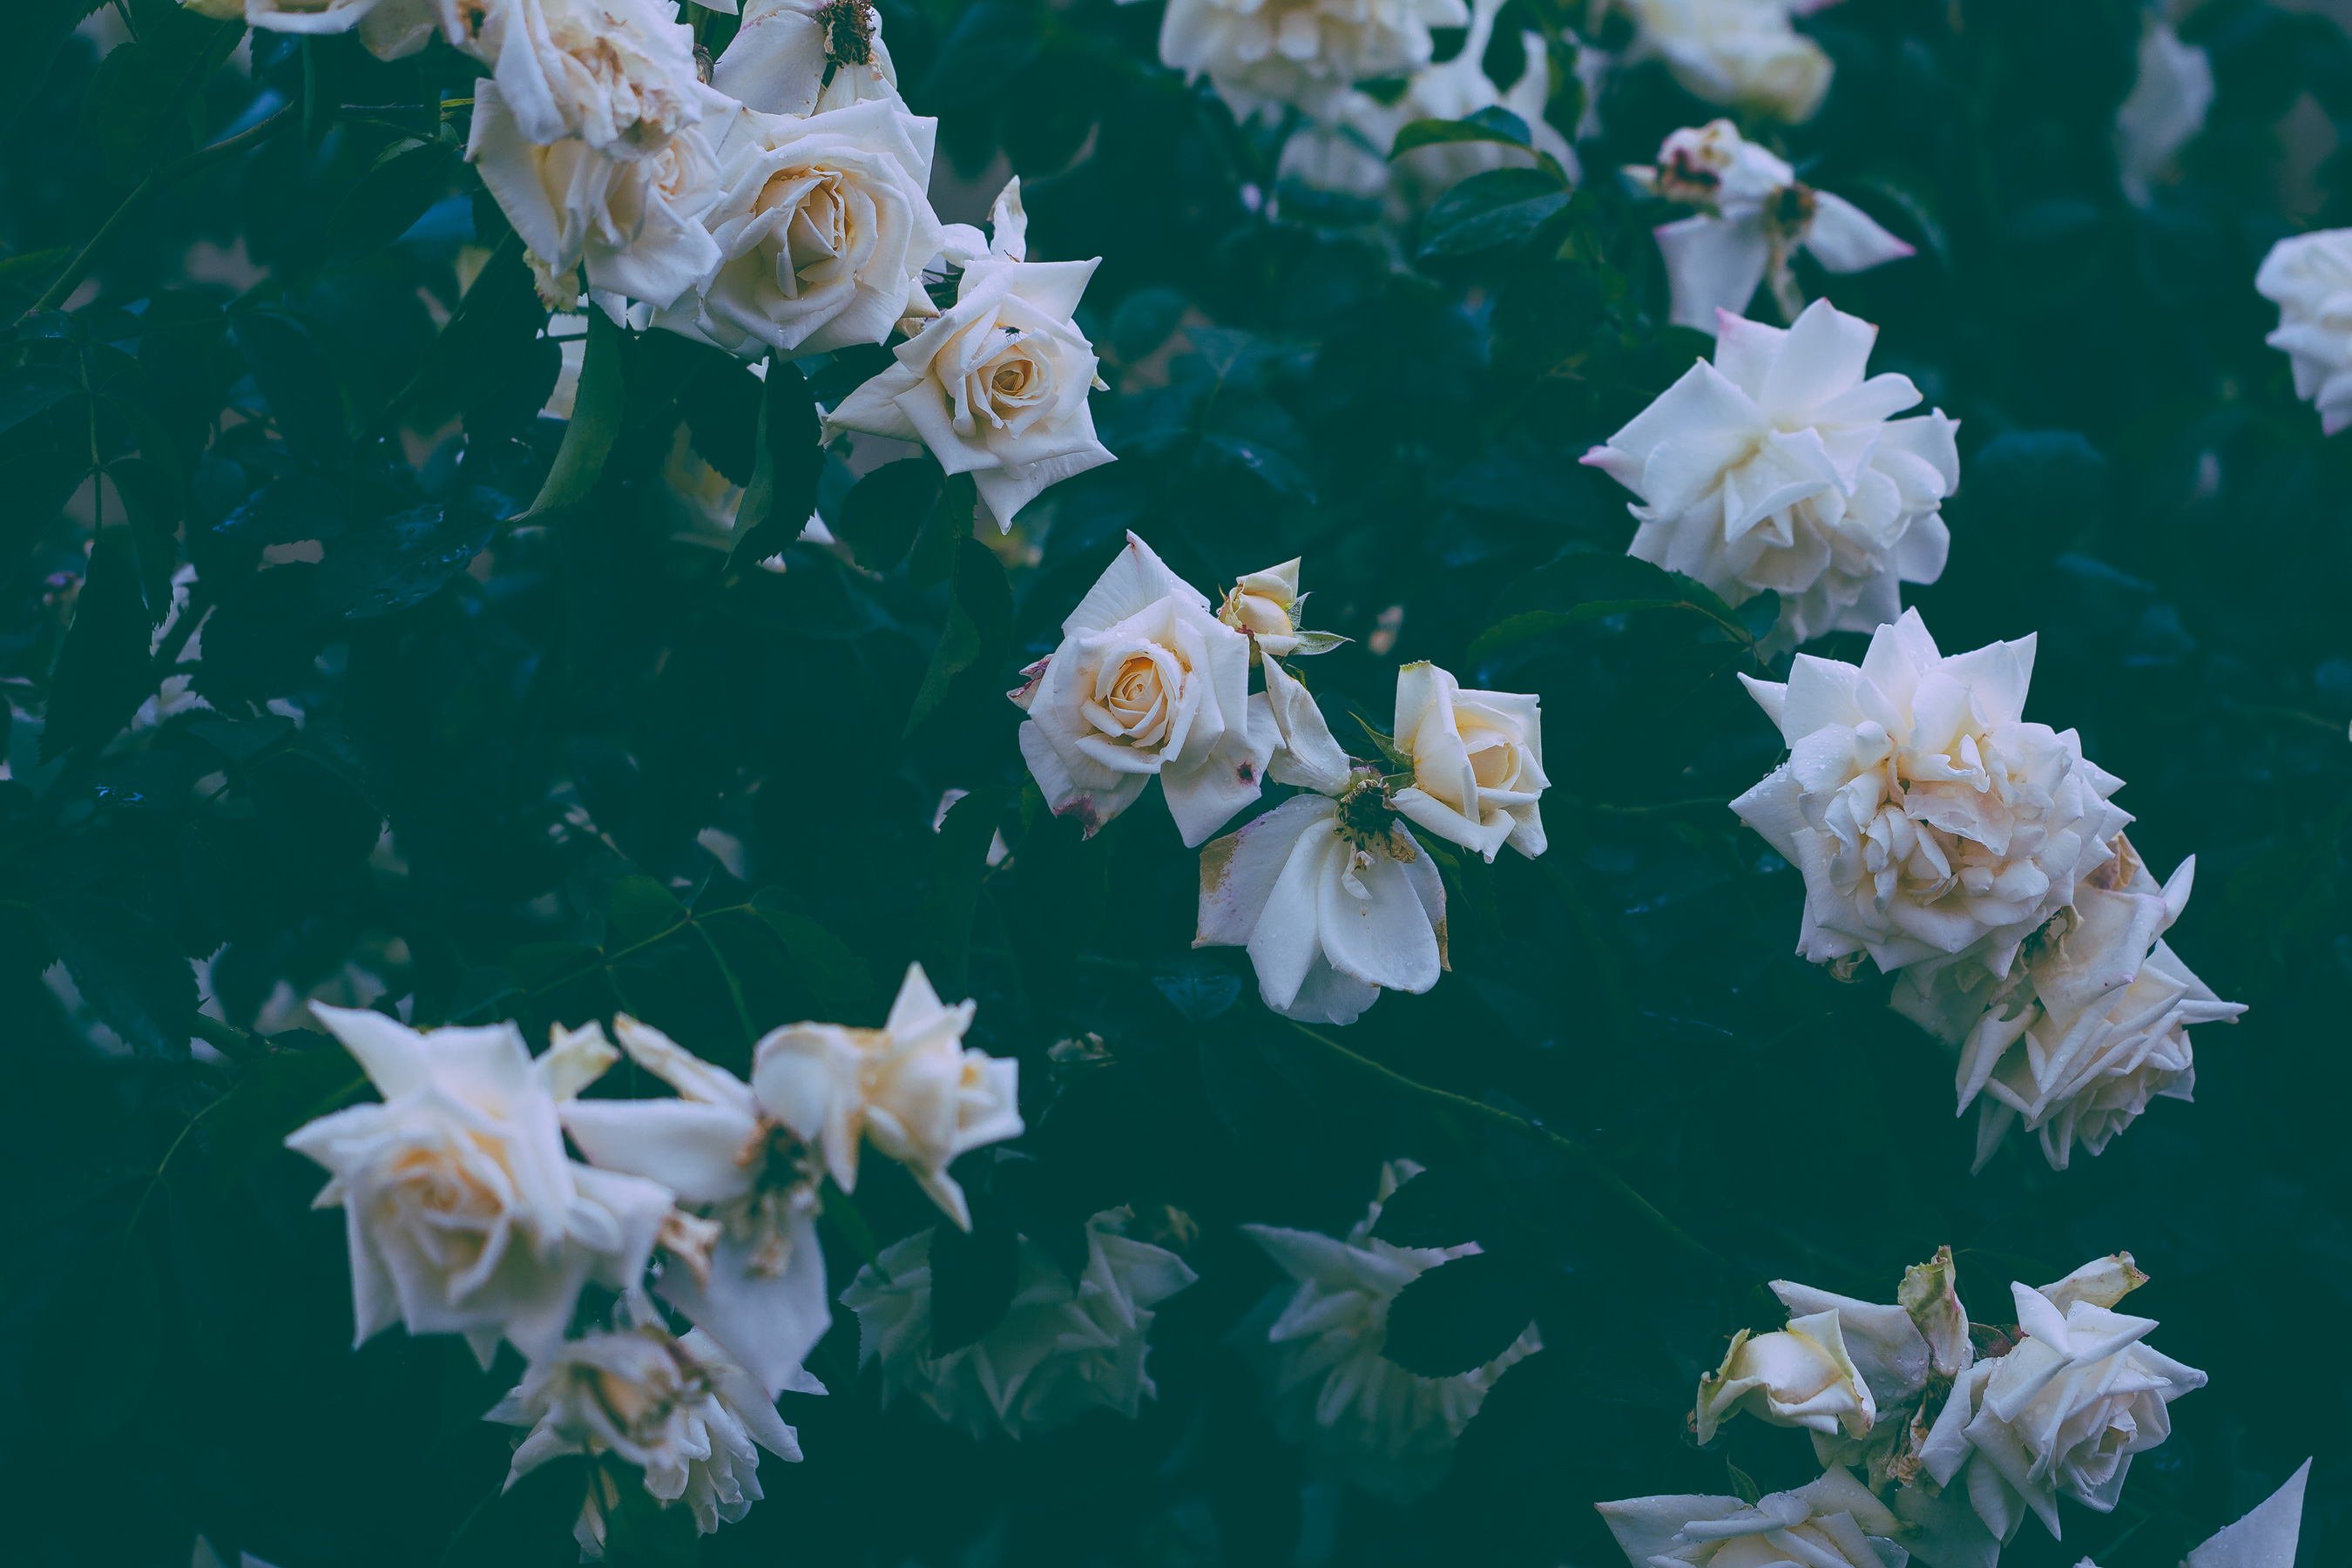 Wild white roses